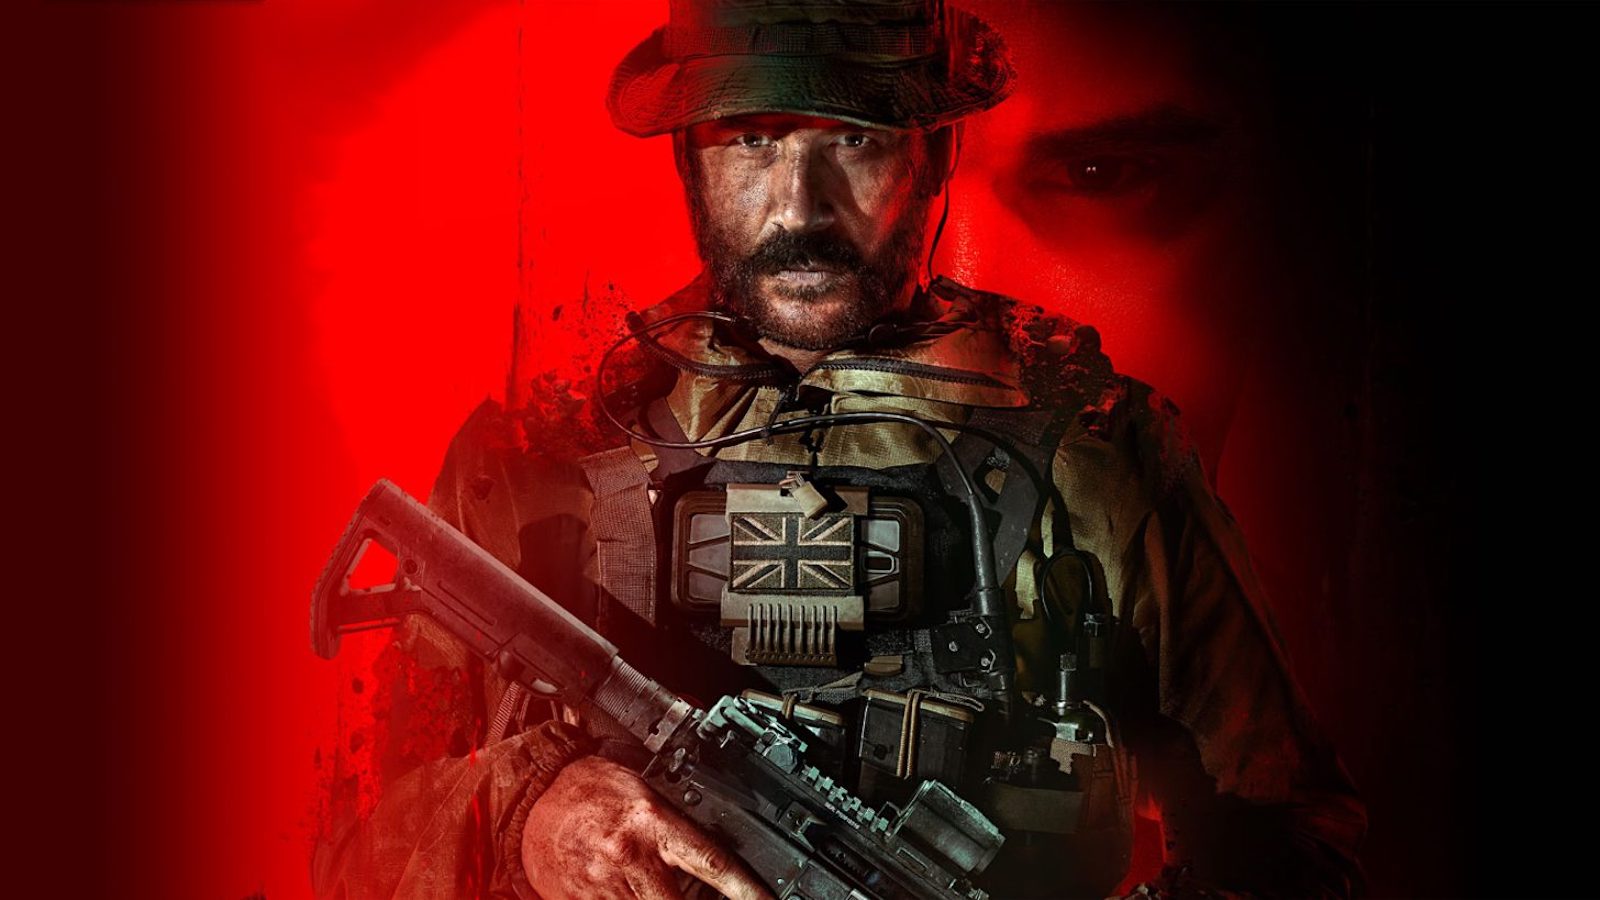 Modern Warfare 3-spelers beschuldigen ontwikkelaars ervan kunstmatige intelligentie te gebruiken om nieuwe skins te maken